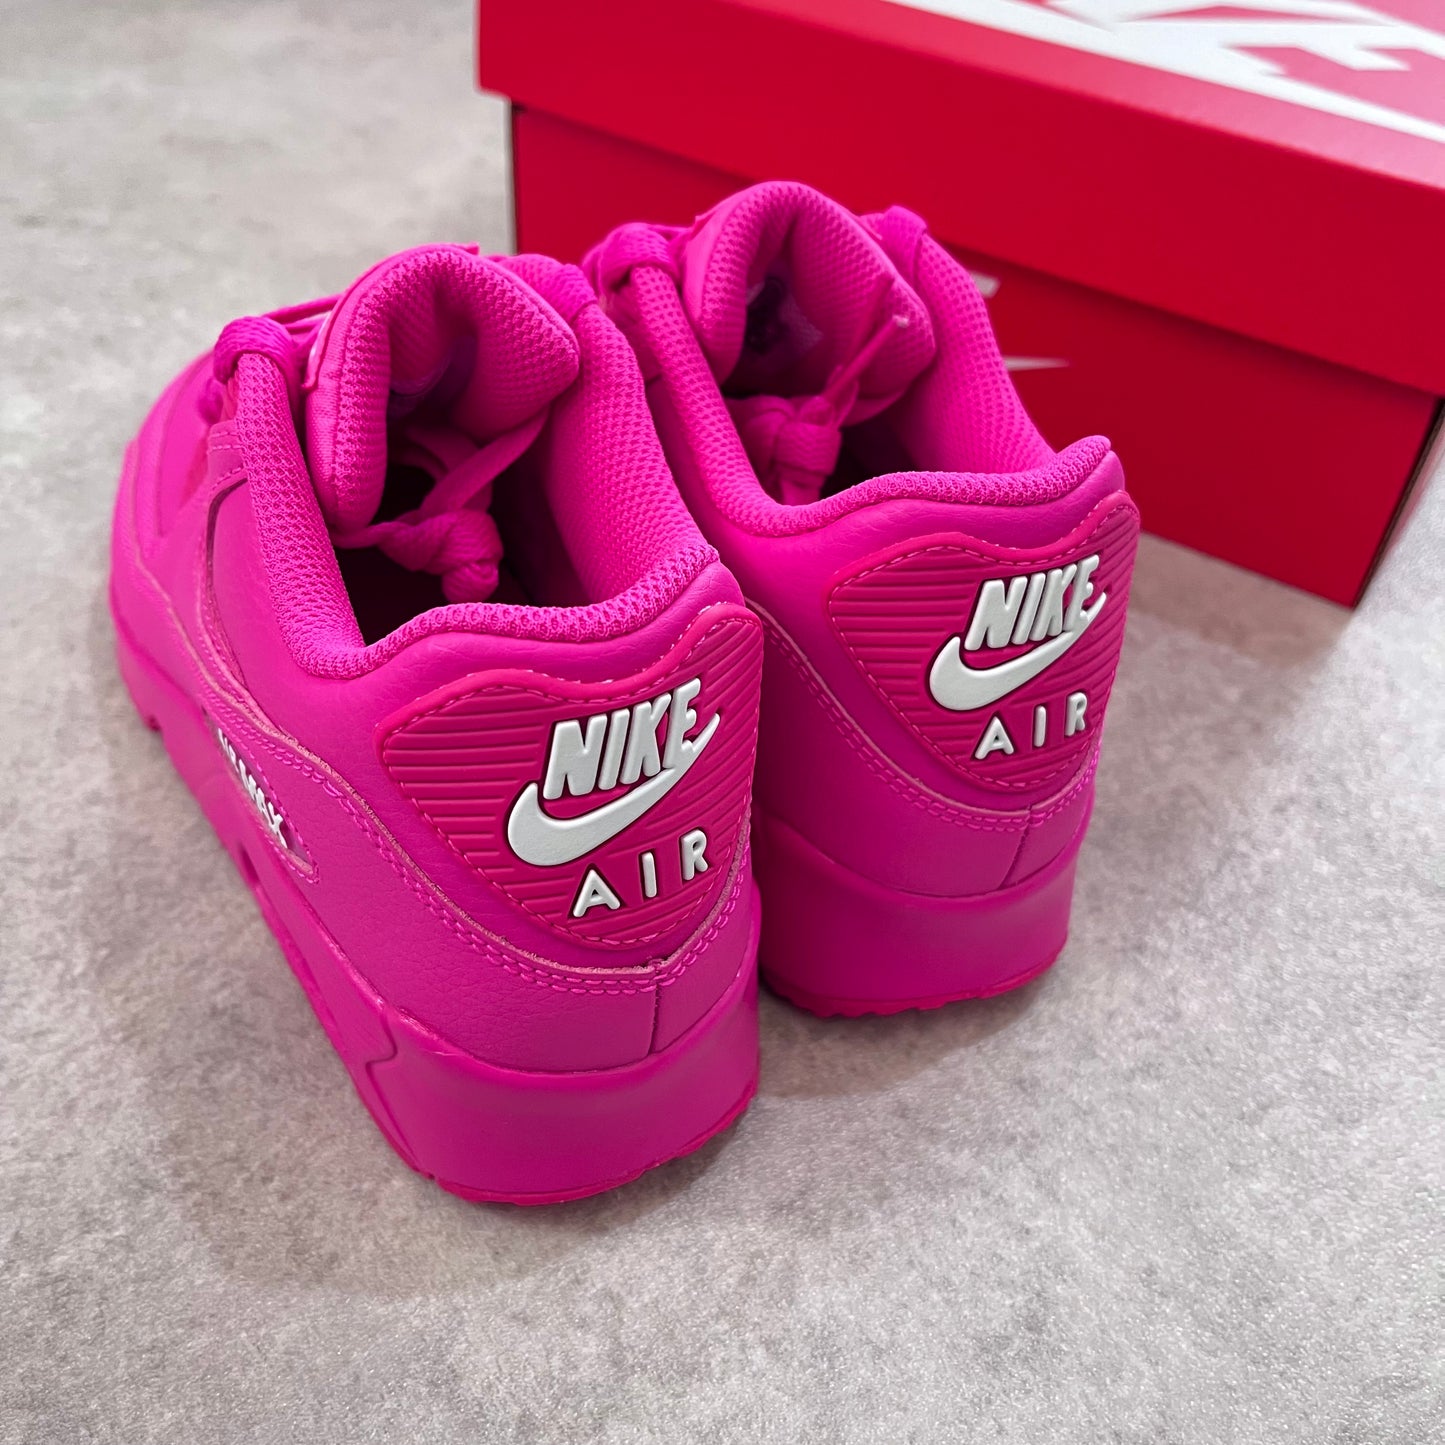 Nike Air Max 90’s